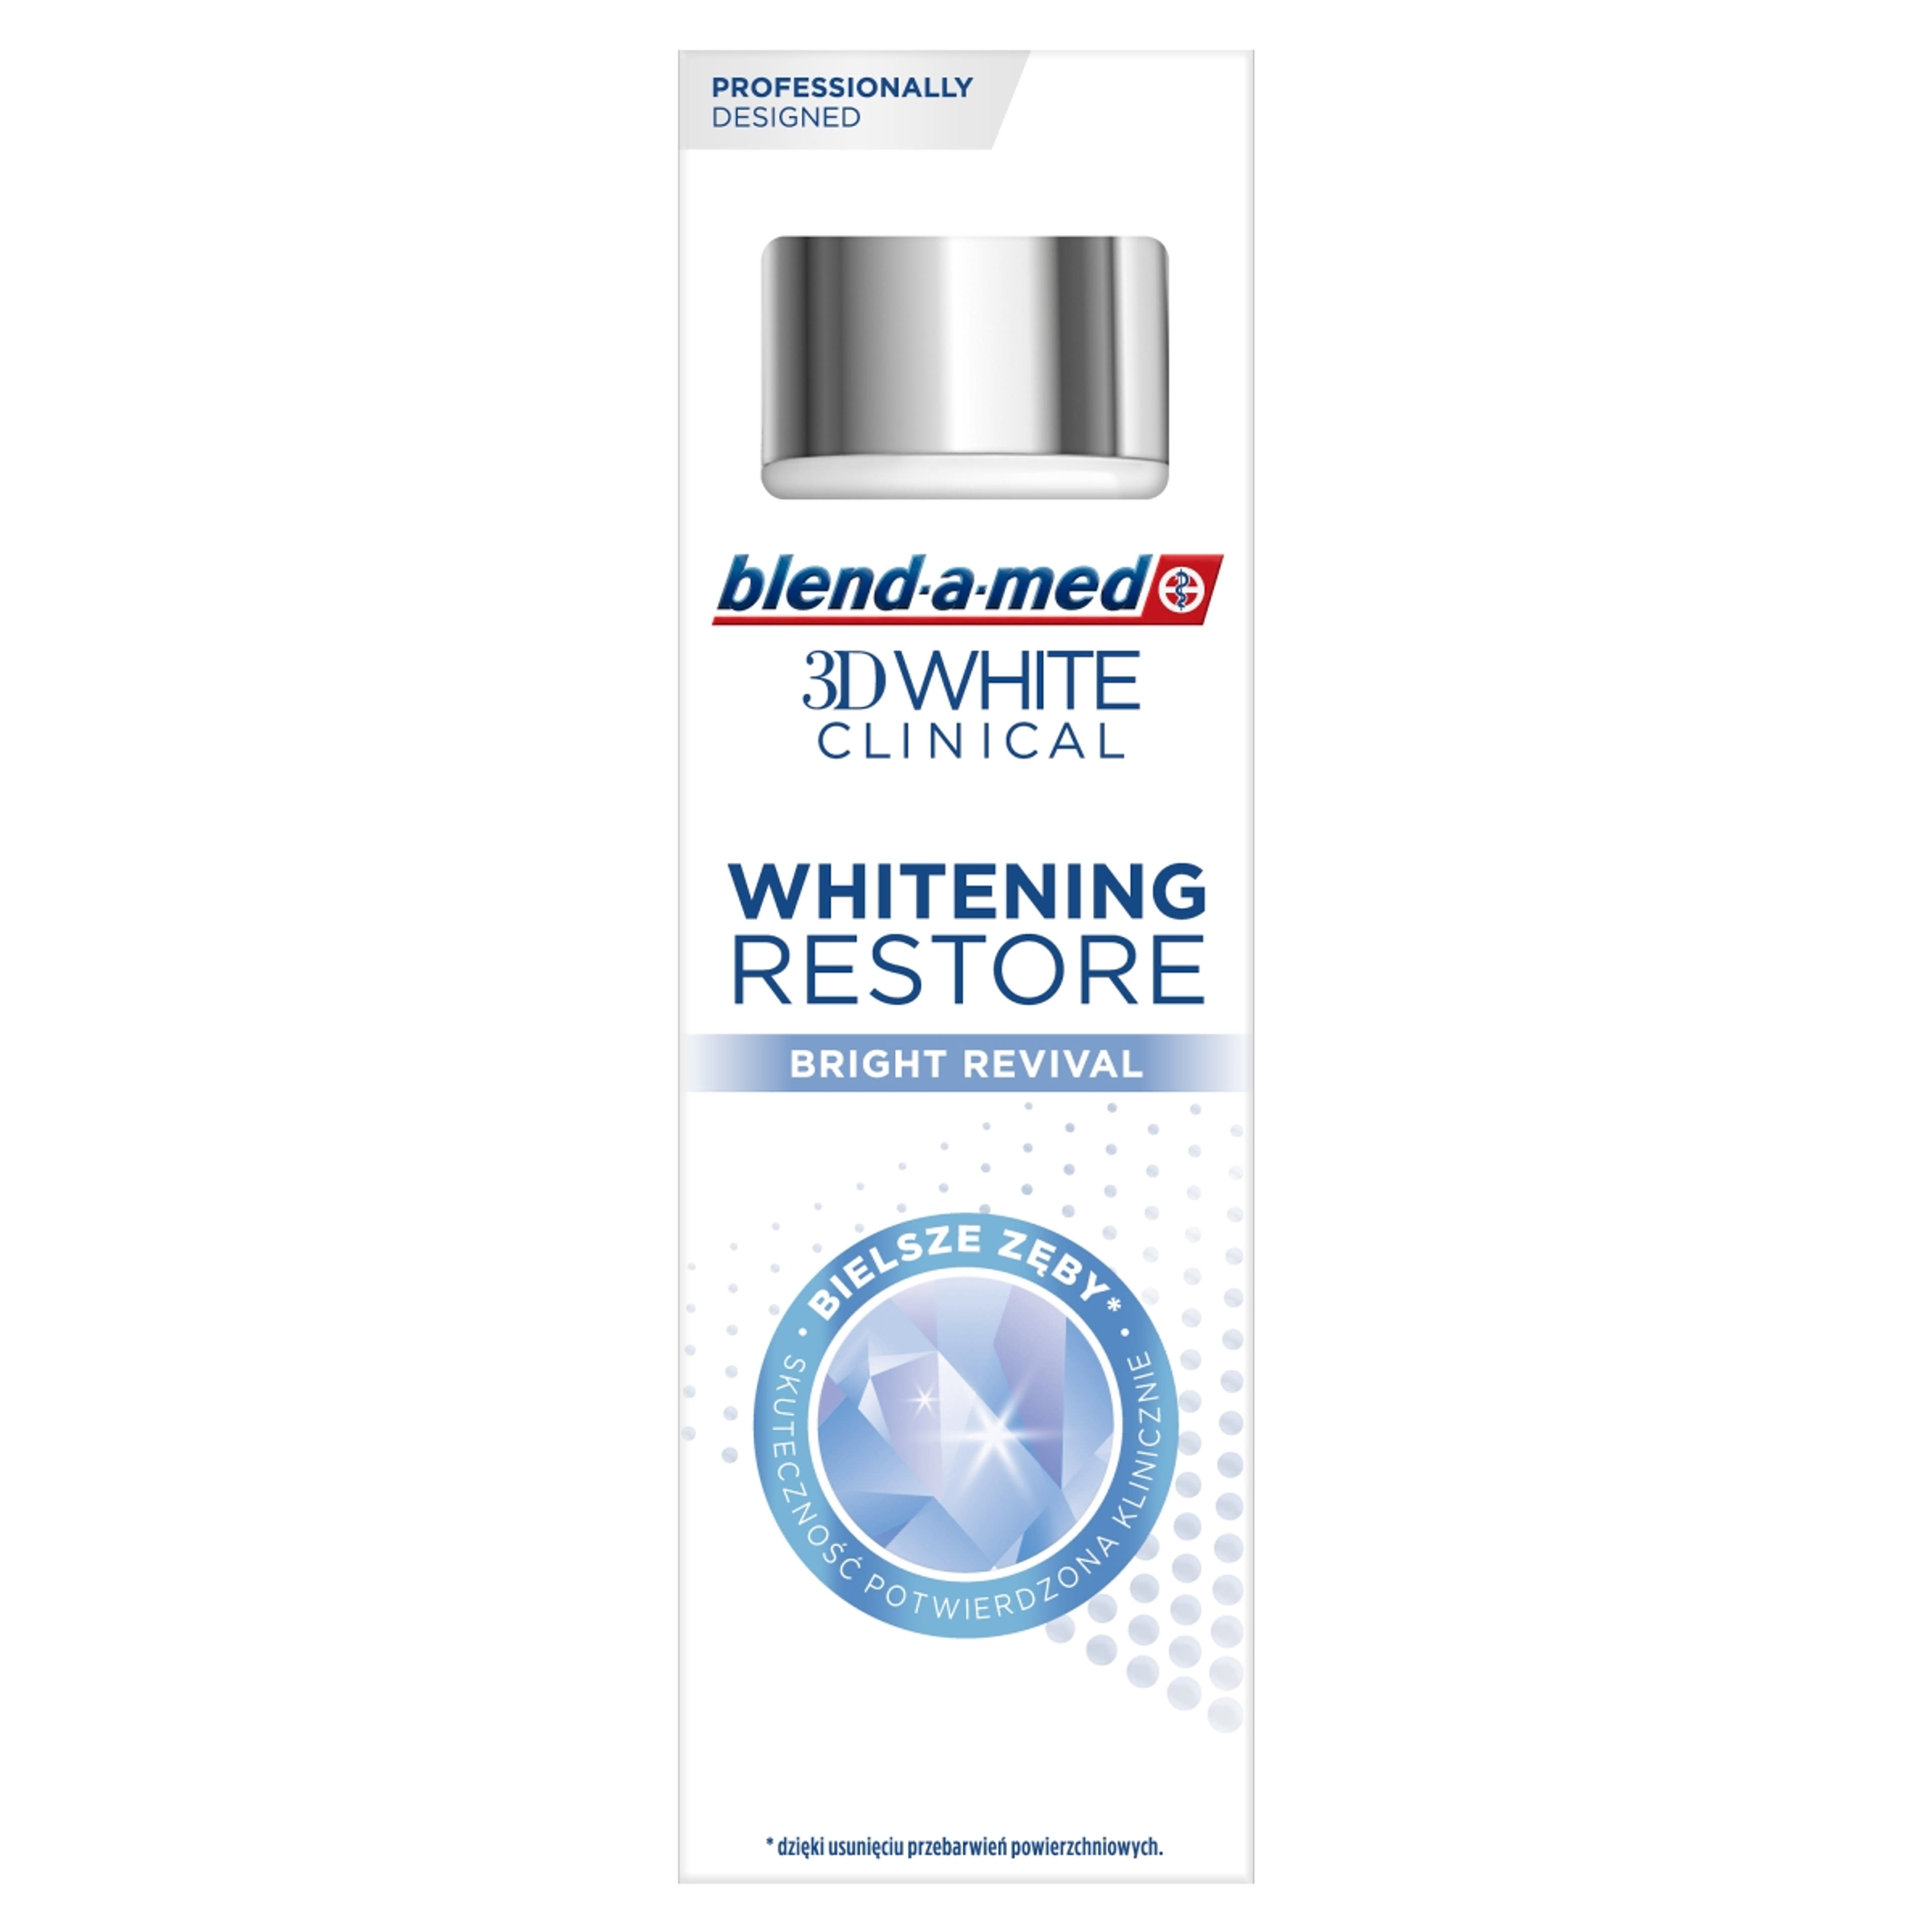 Blend-a-med 3D White Clinical Bright Revival fogkrém - 75 ml-1